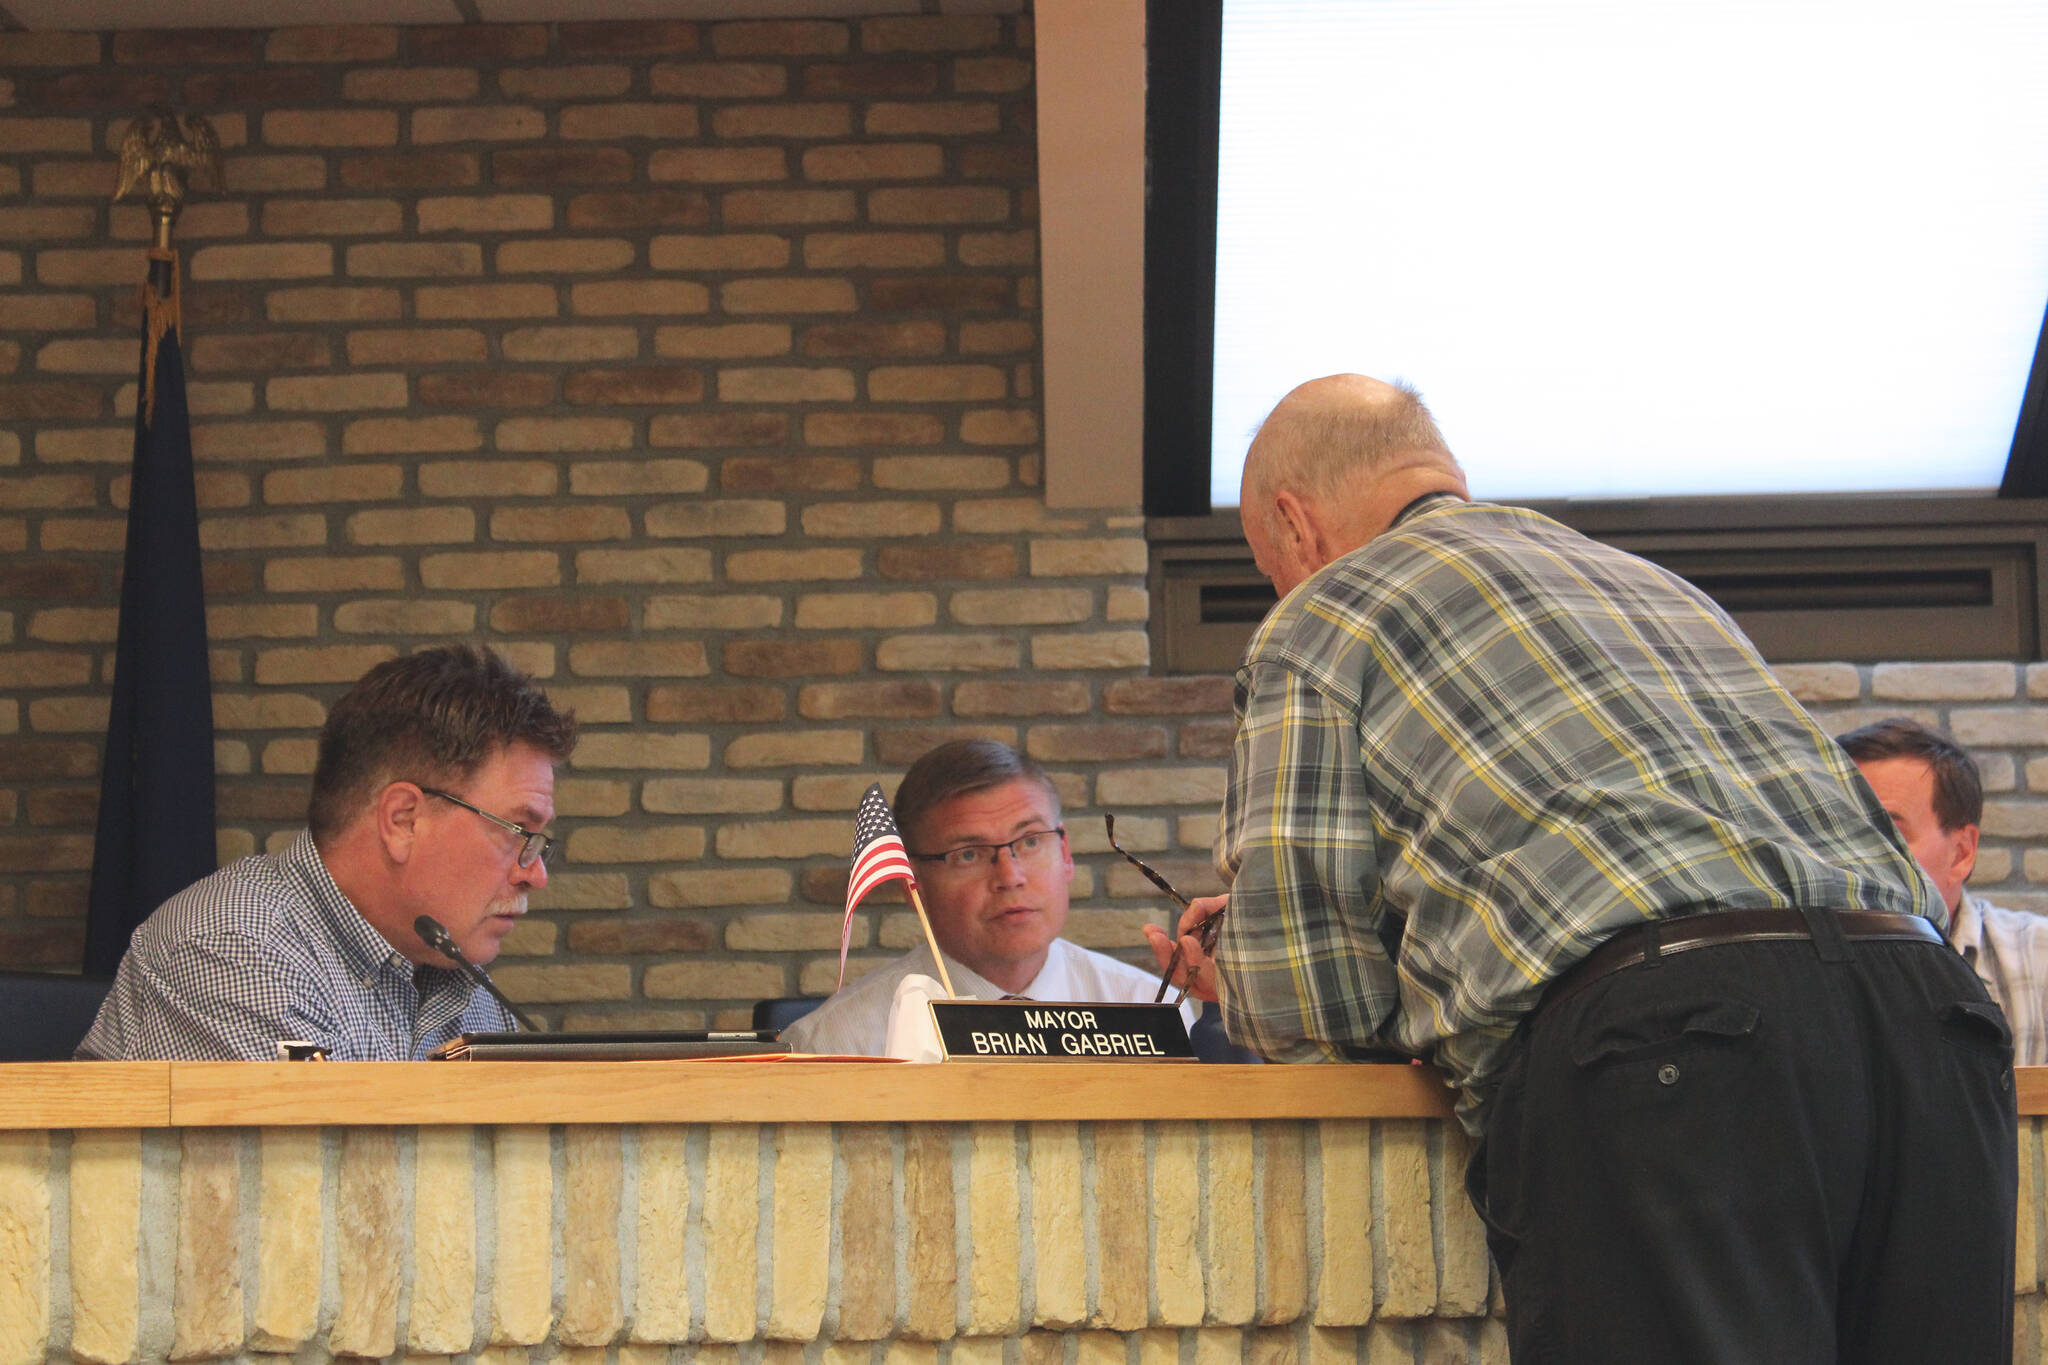 From left: Kenai Mayor Brian Gabriel, Kenai City Manager Paul Ostrander and Kenai Vice Mayor Jim Glendening discuss legislation during an at-ease at a council meeting on Wednesday, June 15, 2022, in Kenai, Alaska. (Ashlyn O’Hara/Peninsula Clarion)